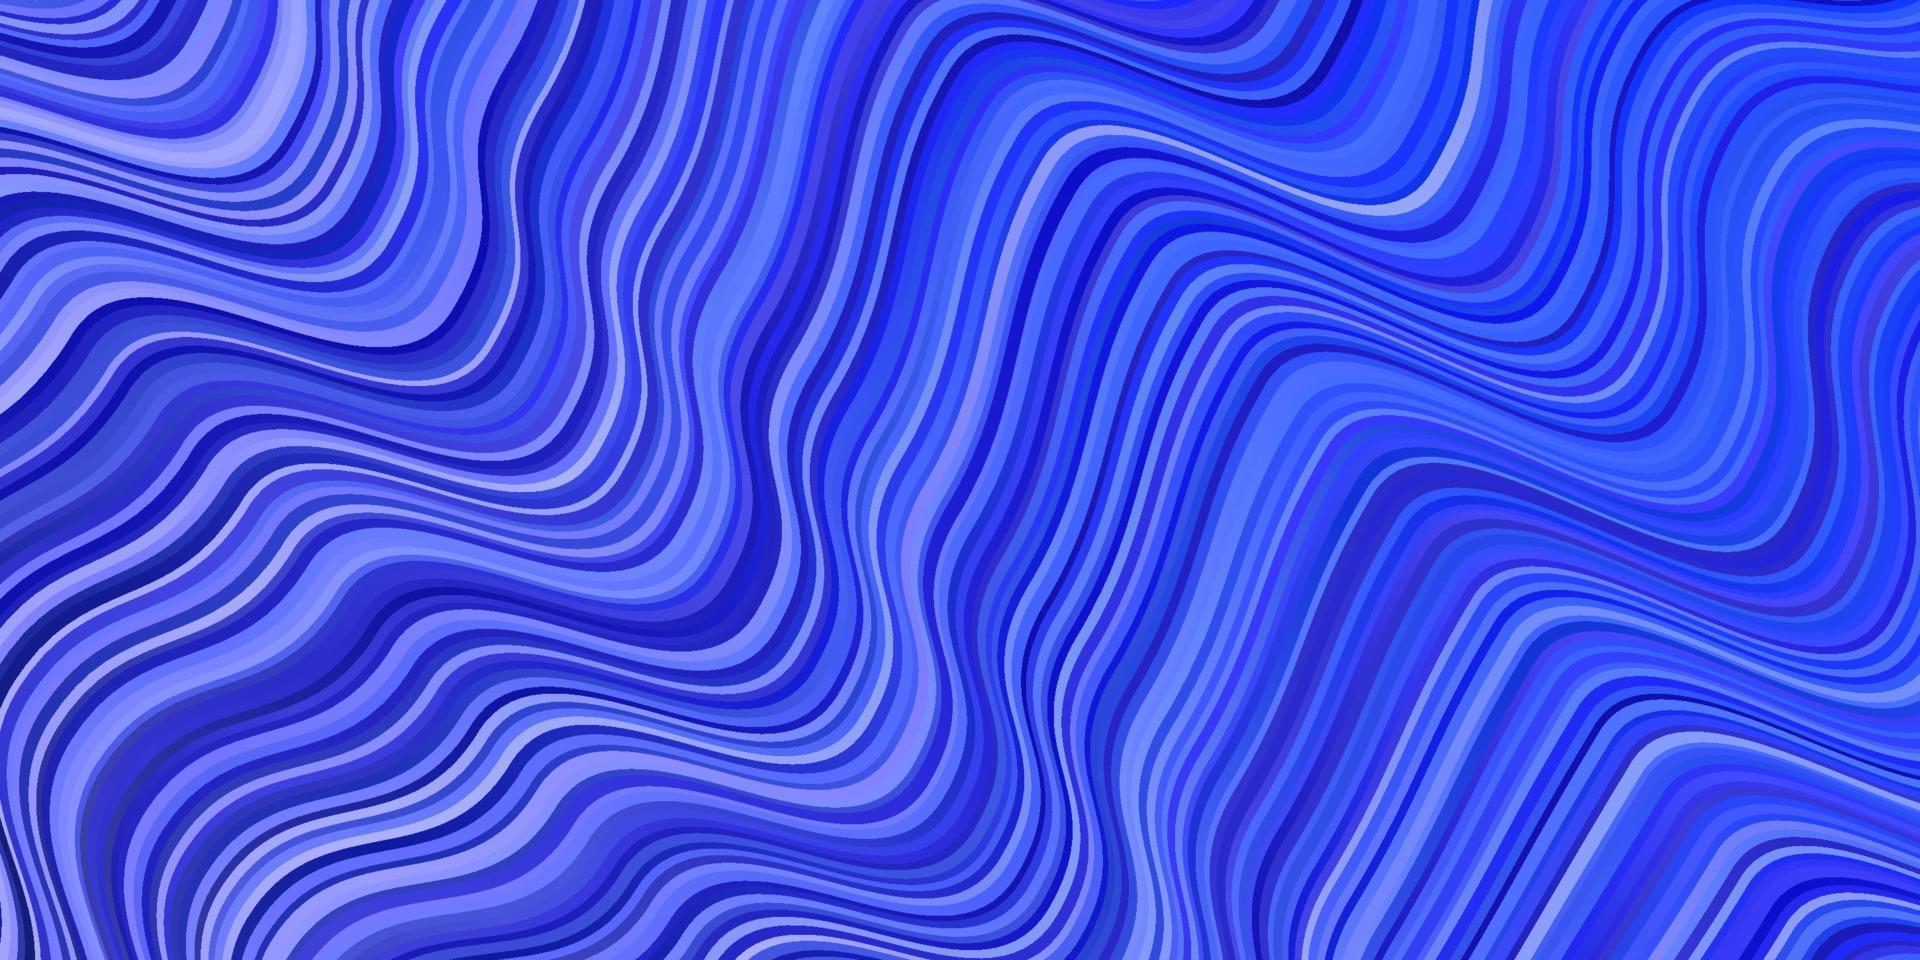 Fondo de vector rosa claro, azul con líneas curvas.